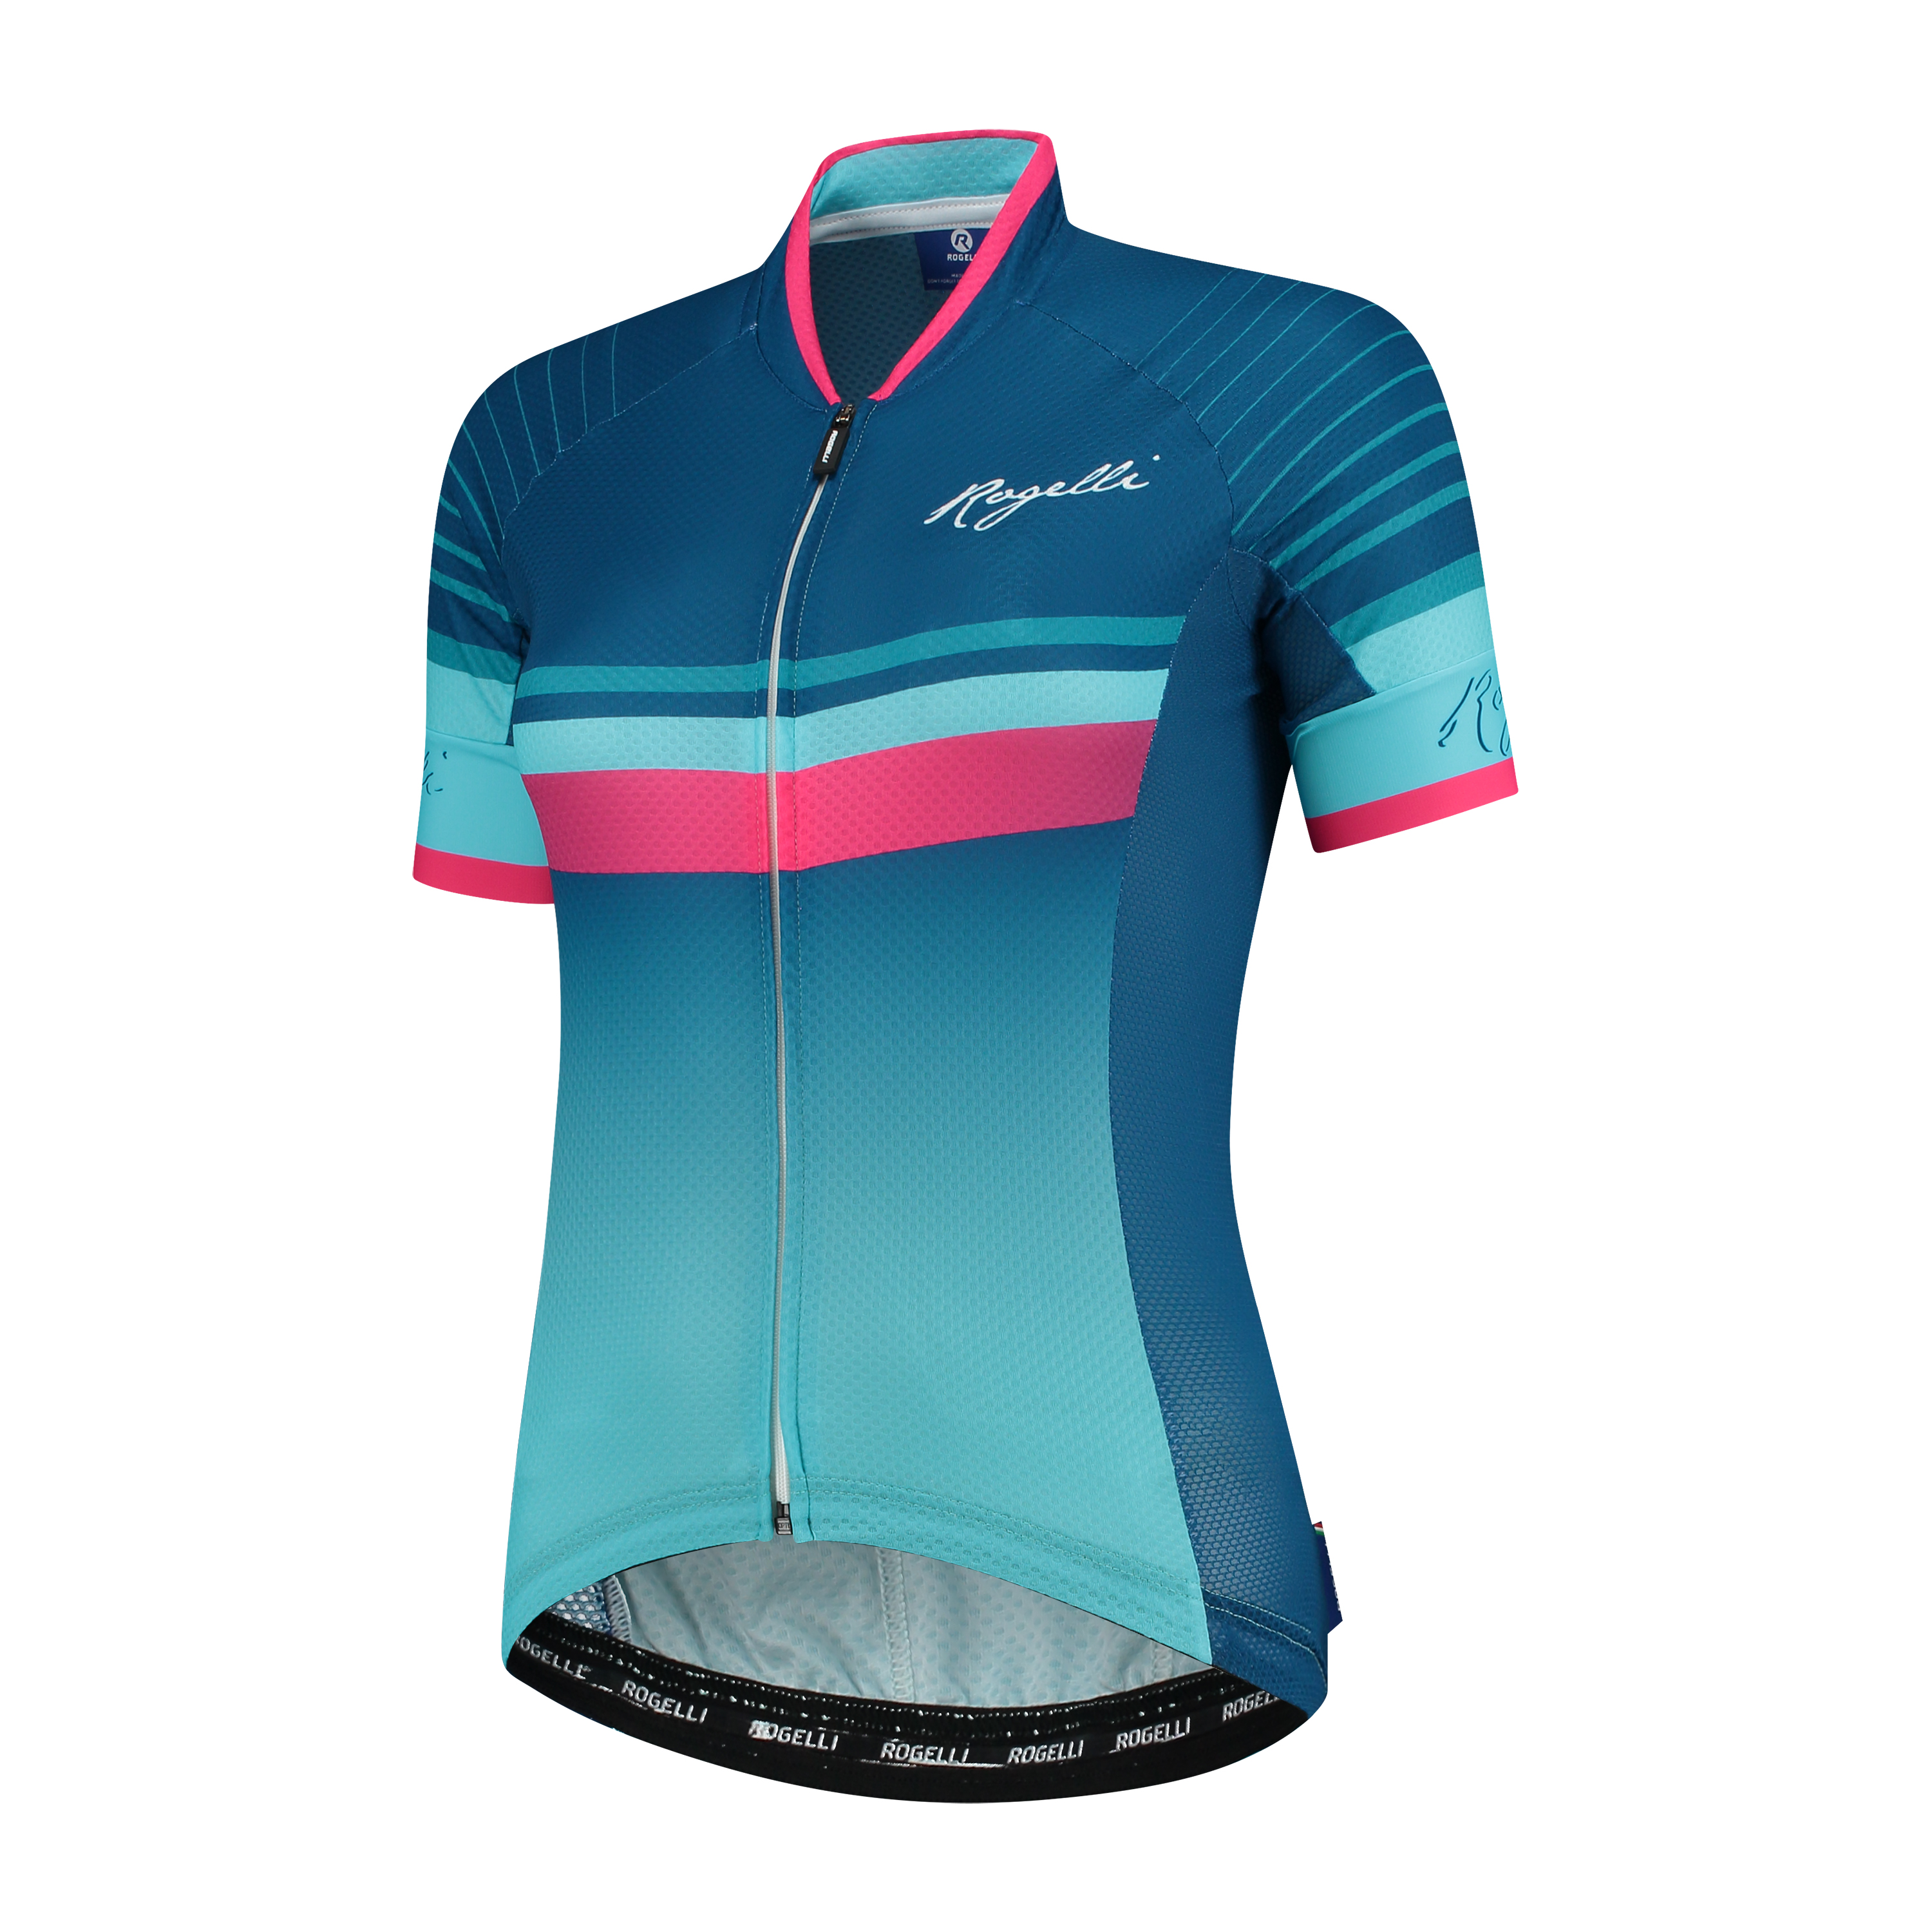 2 Delig Dames fietsset Impress shirt + broek Blauw/roze